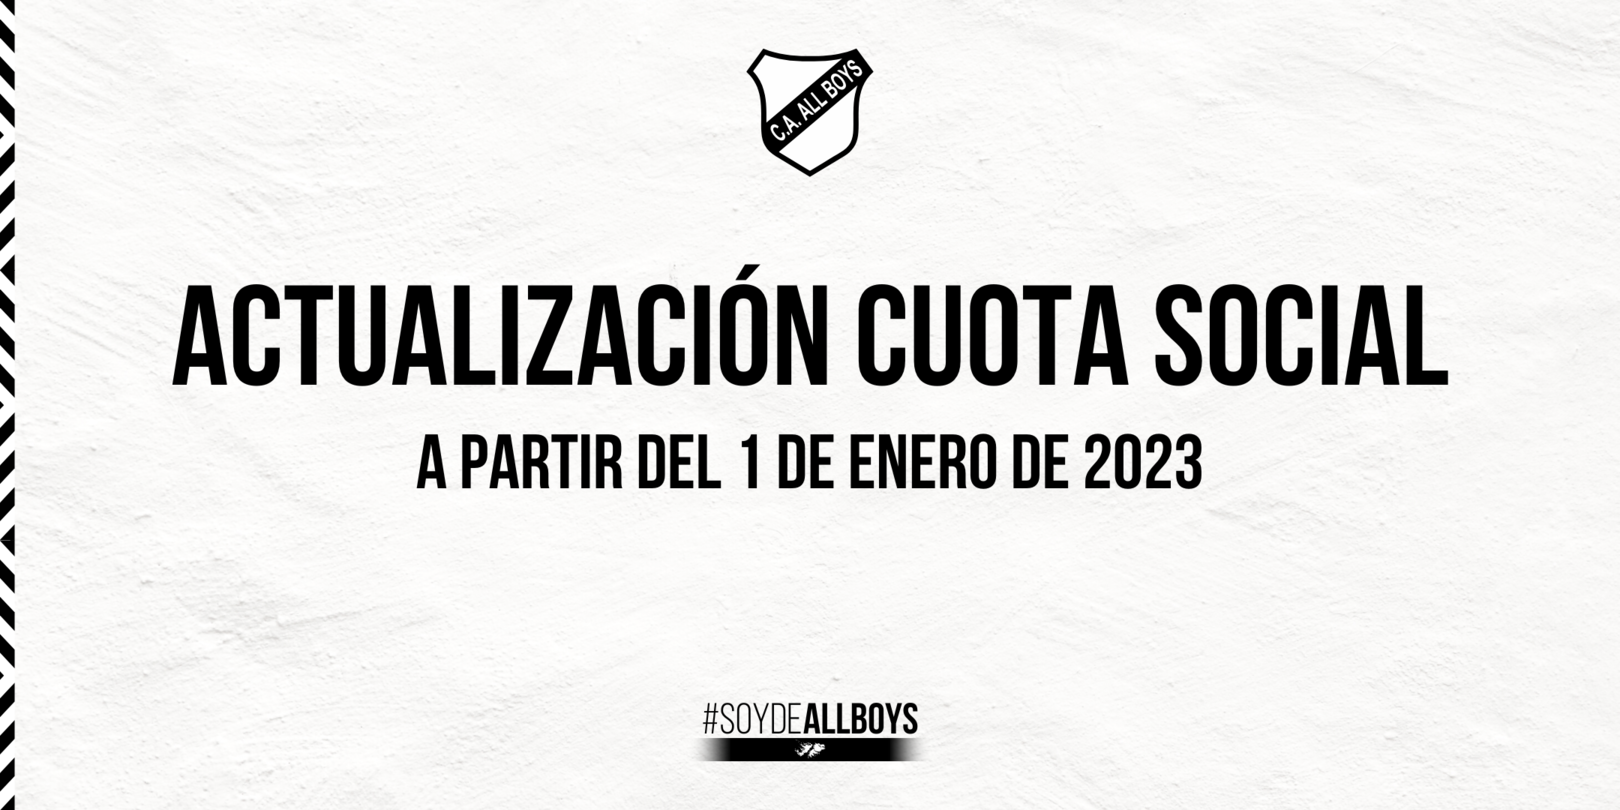 Actualización de la cuota social - Club Atlético Atlanta